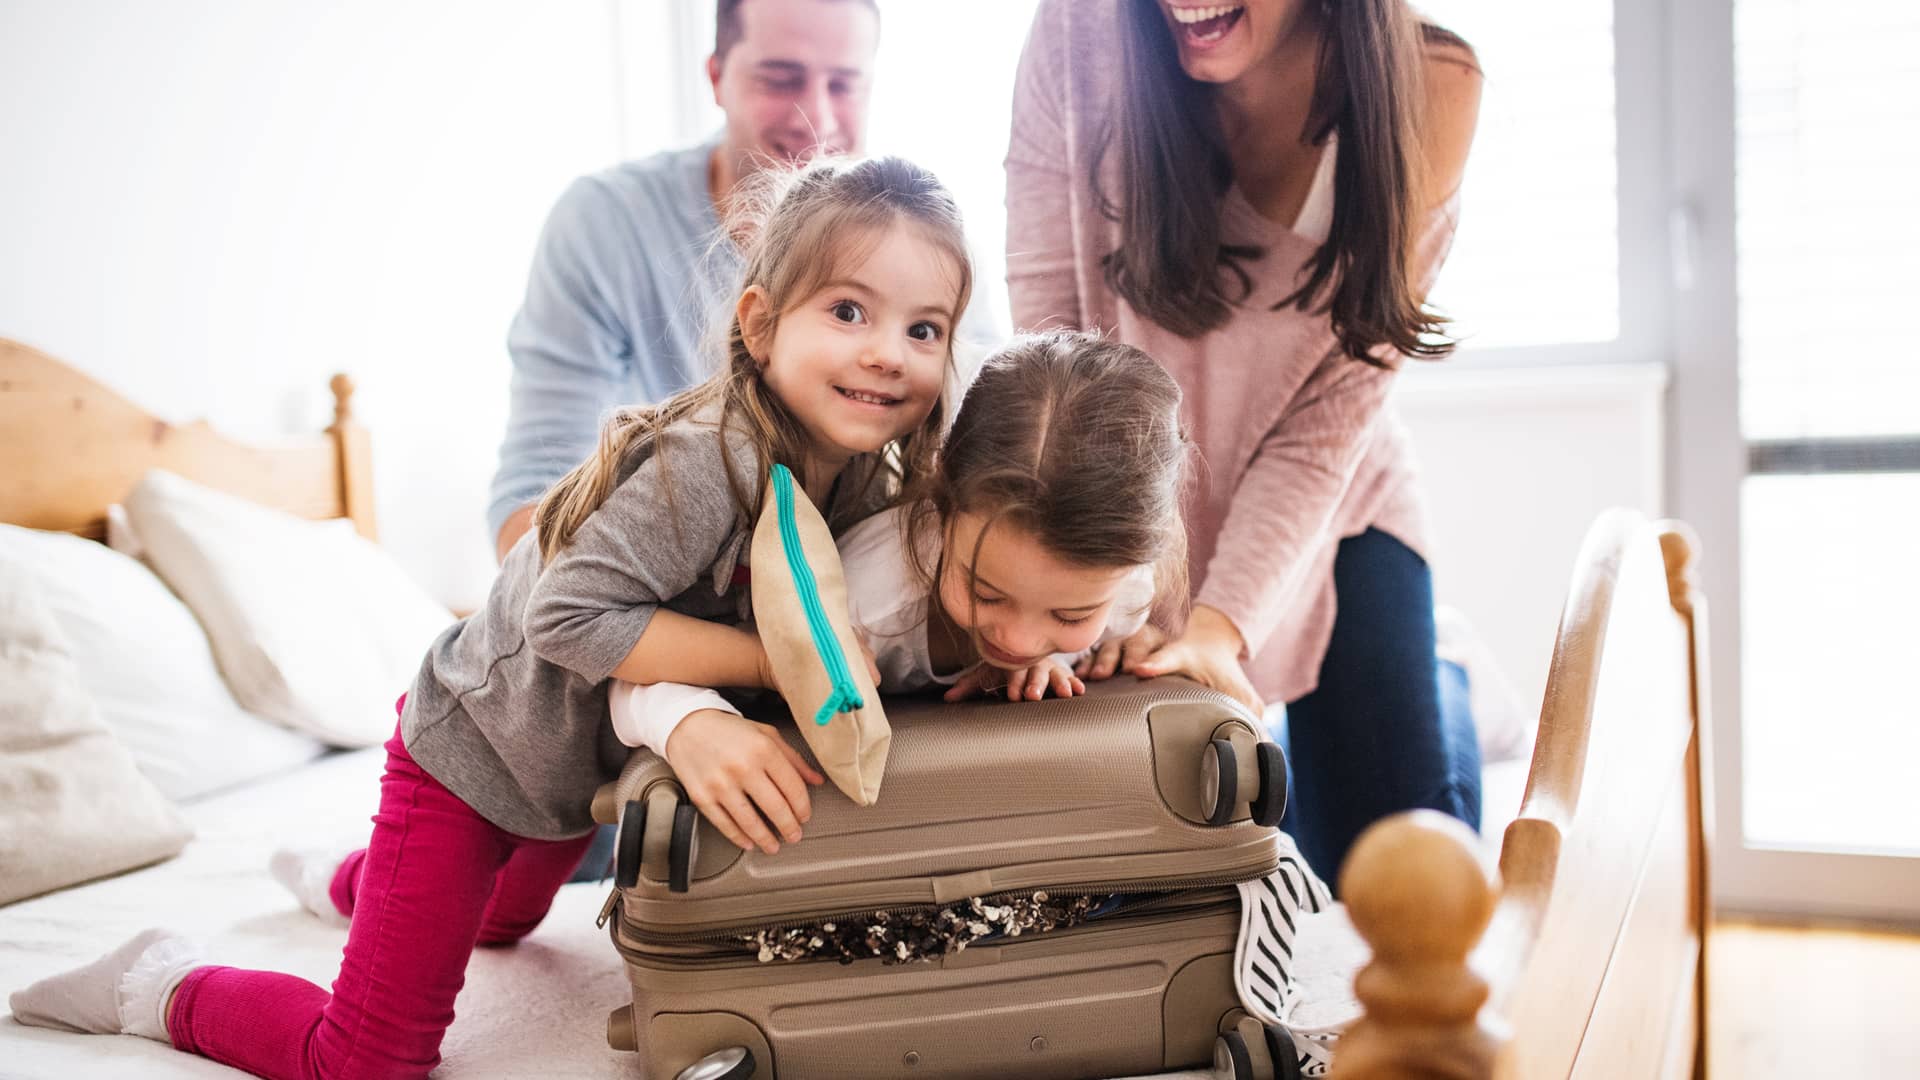 Familia preparando la maleta para irse de vacaciones con seguro de viaje imq